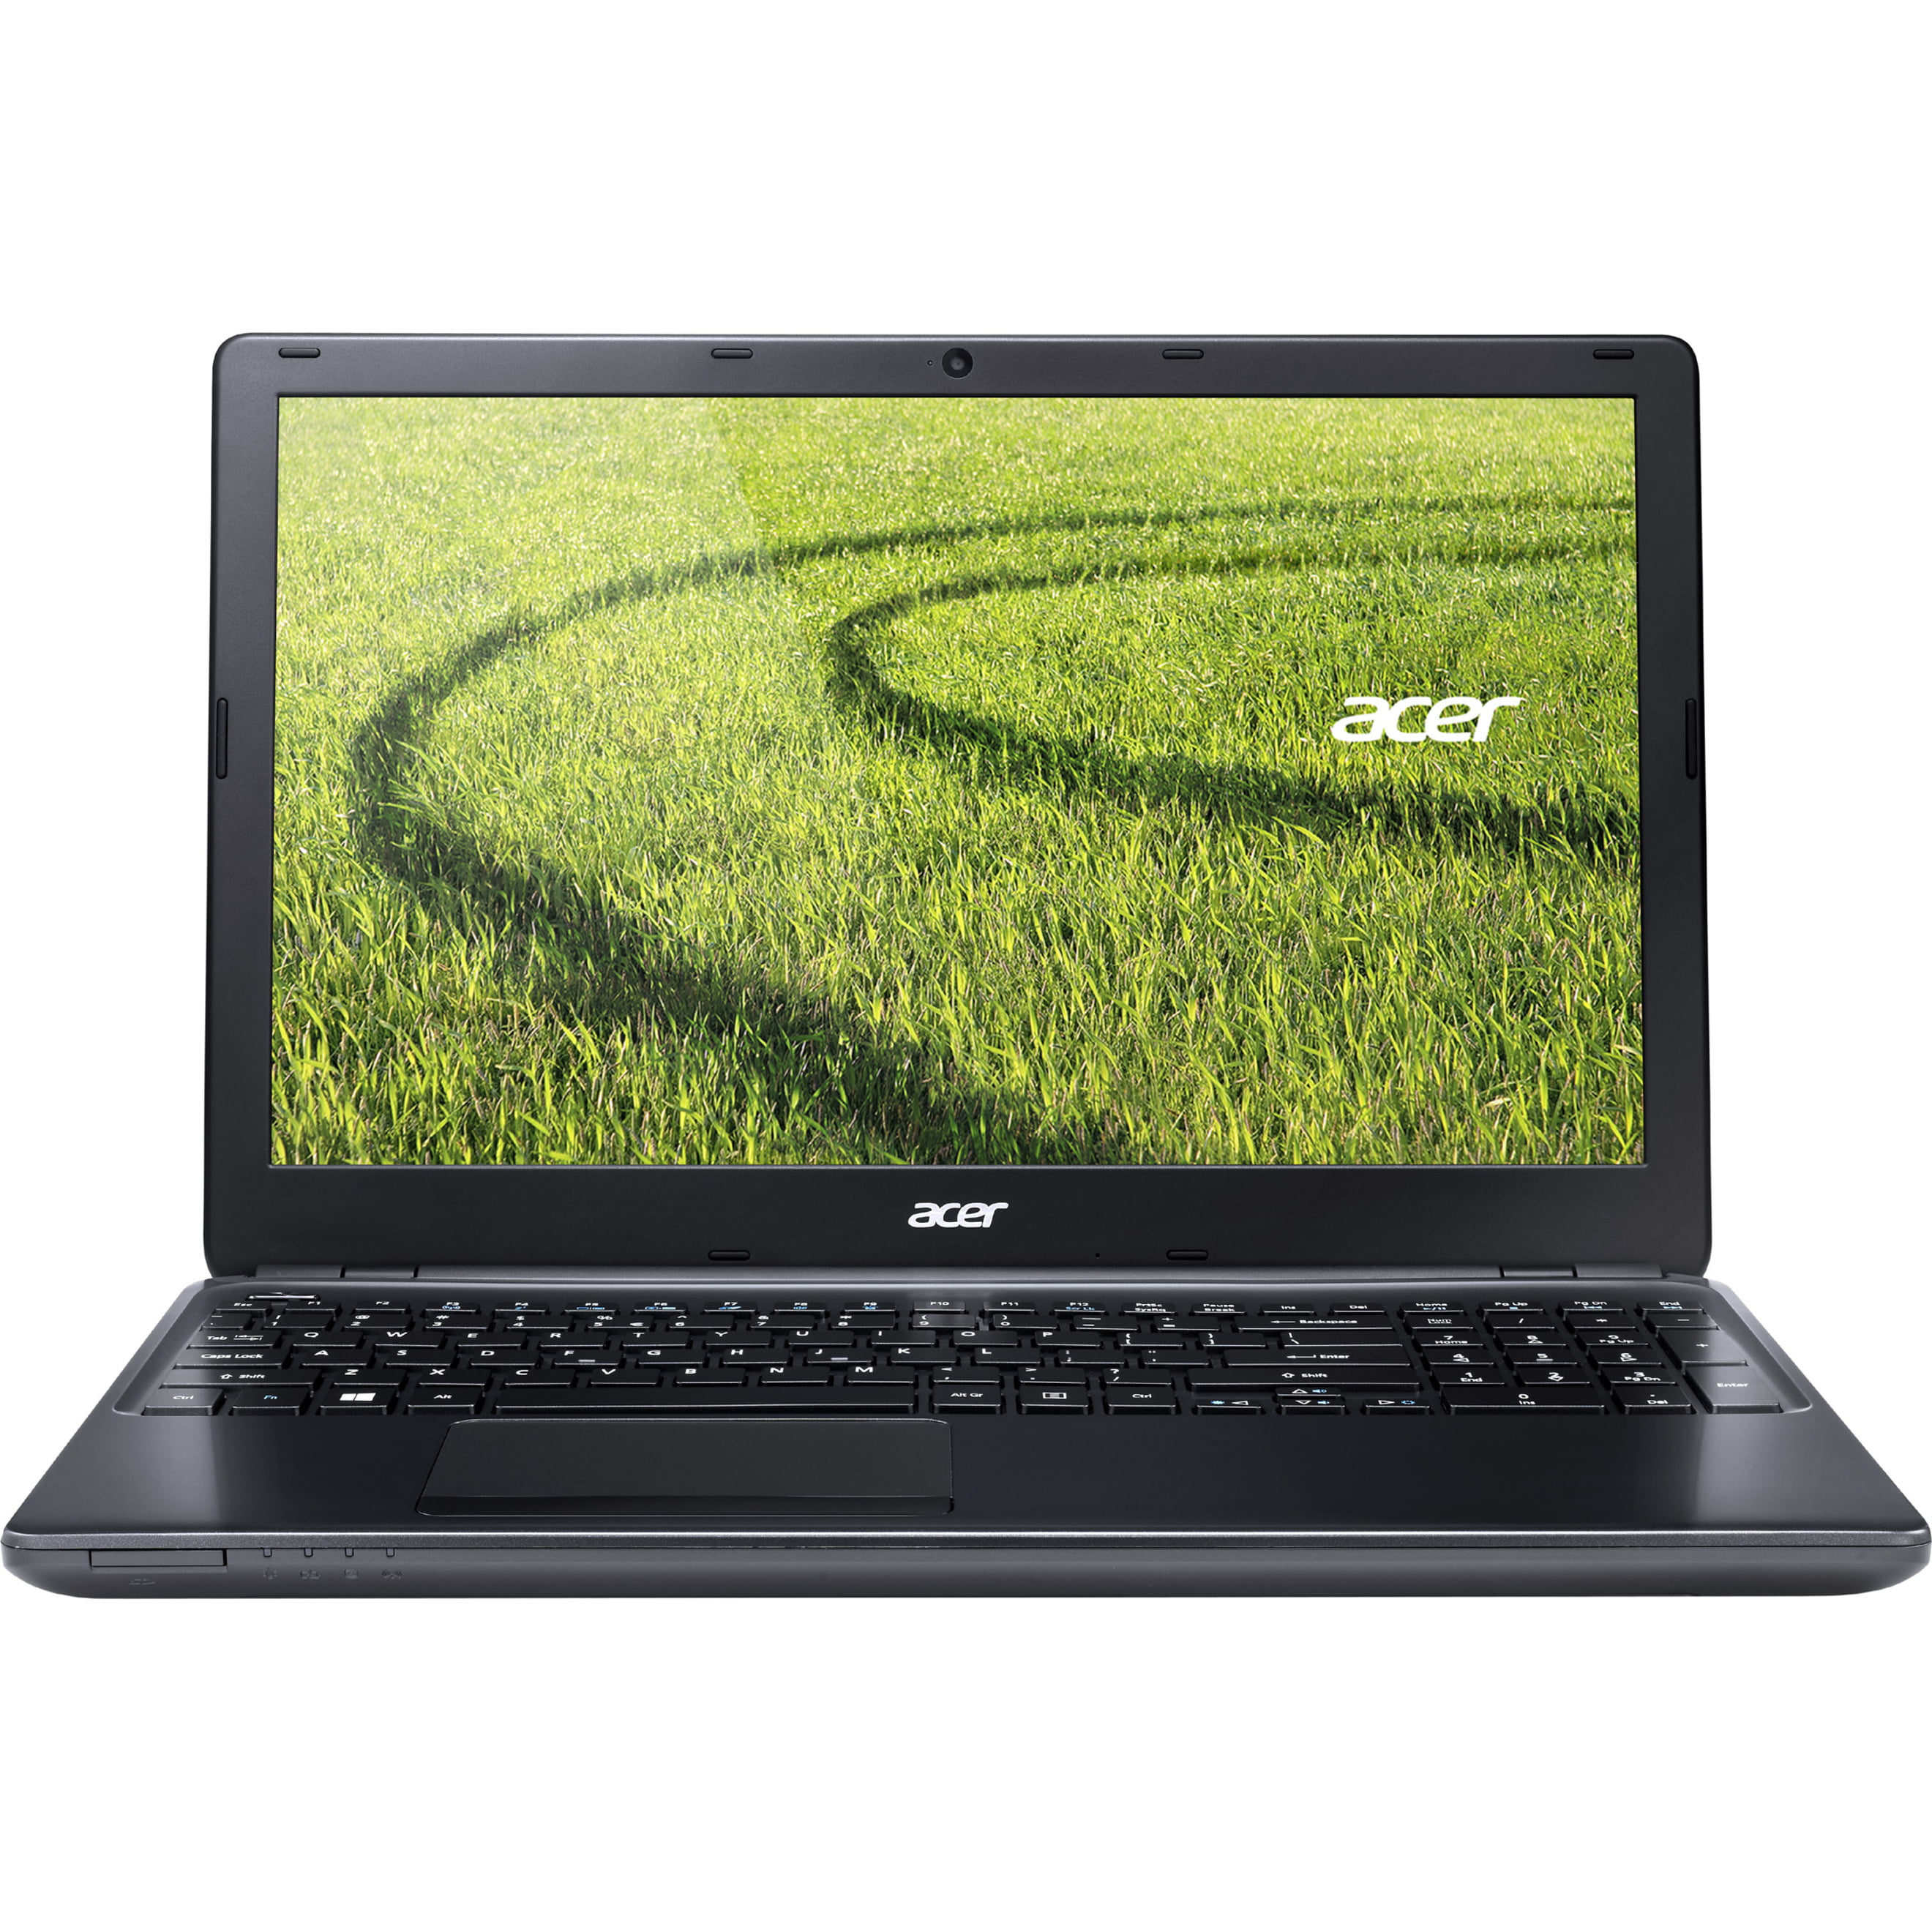 Acer es series aes005. Acer e1-572g. Ноутбук Acer Aspire e1-572g. Acer v5 573g. Ноутбук Acer Aspire v5.